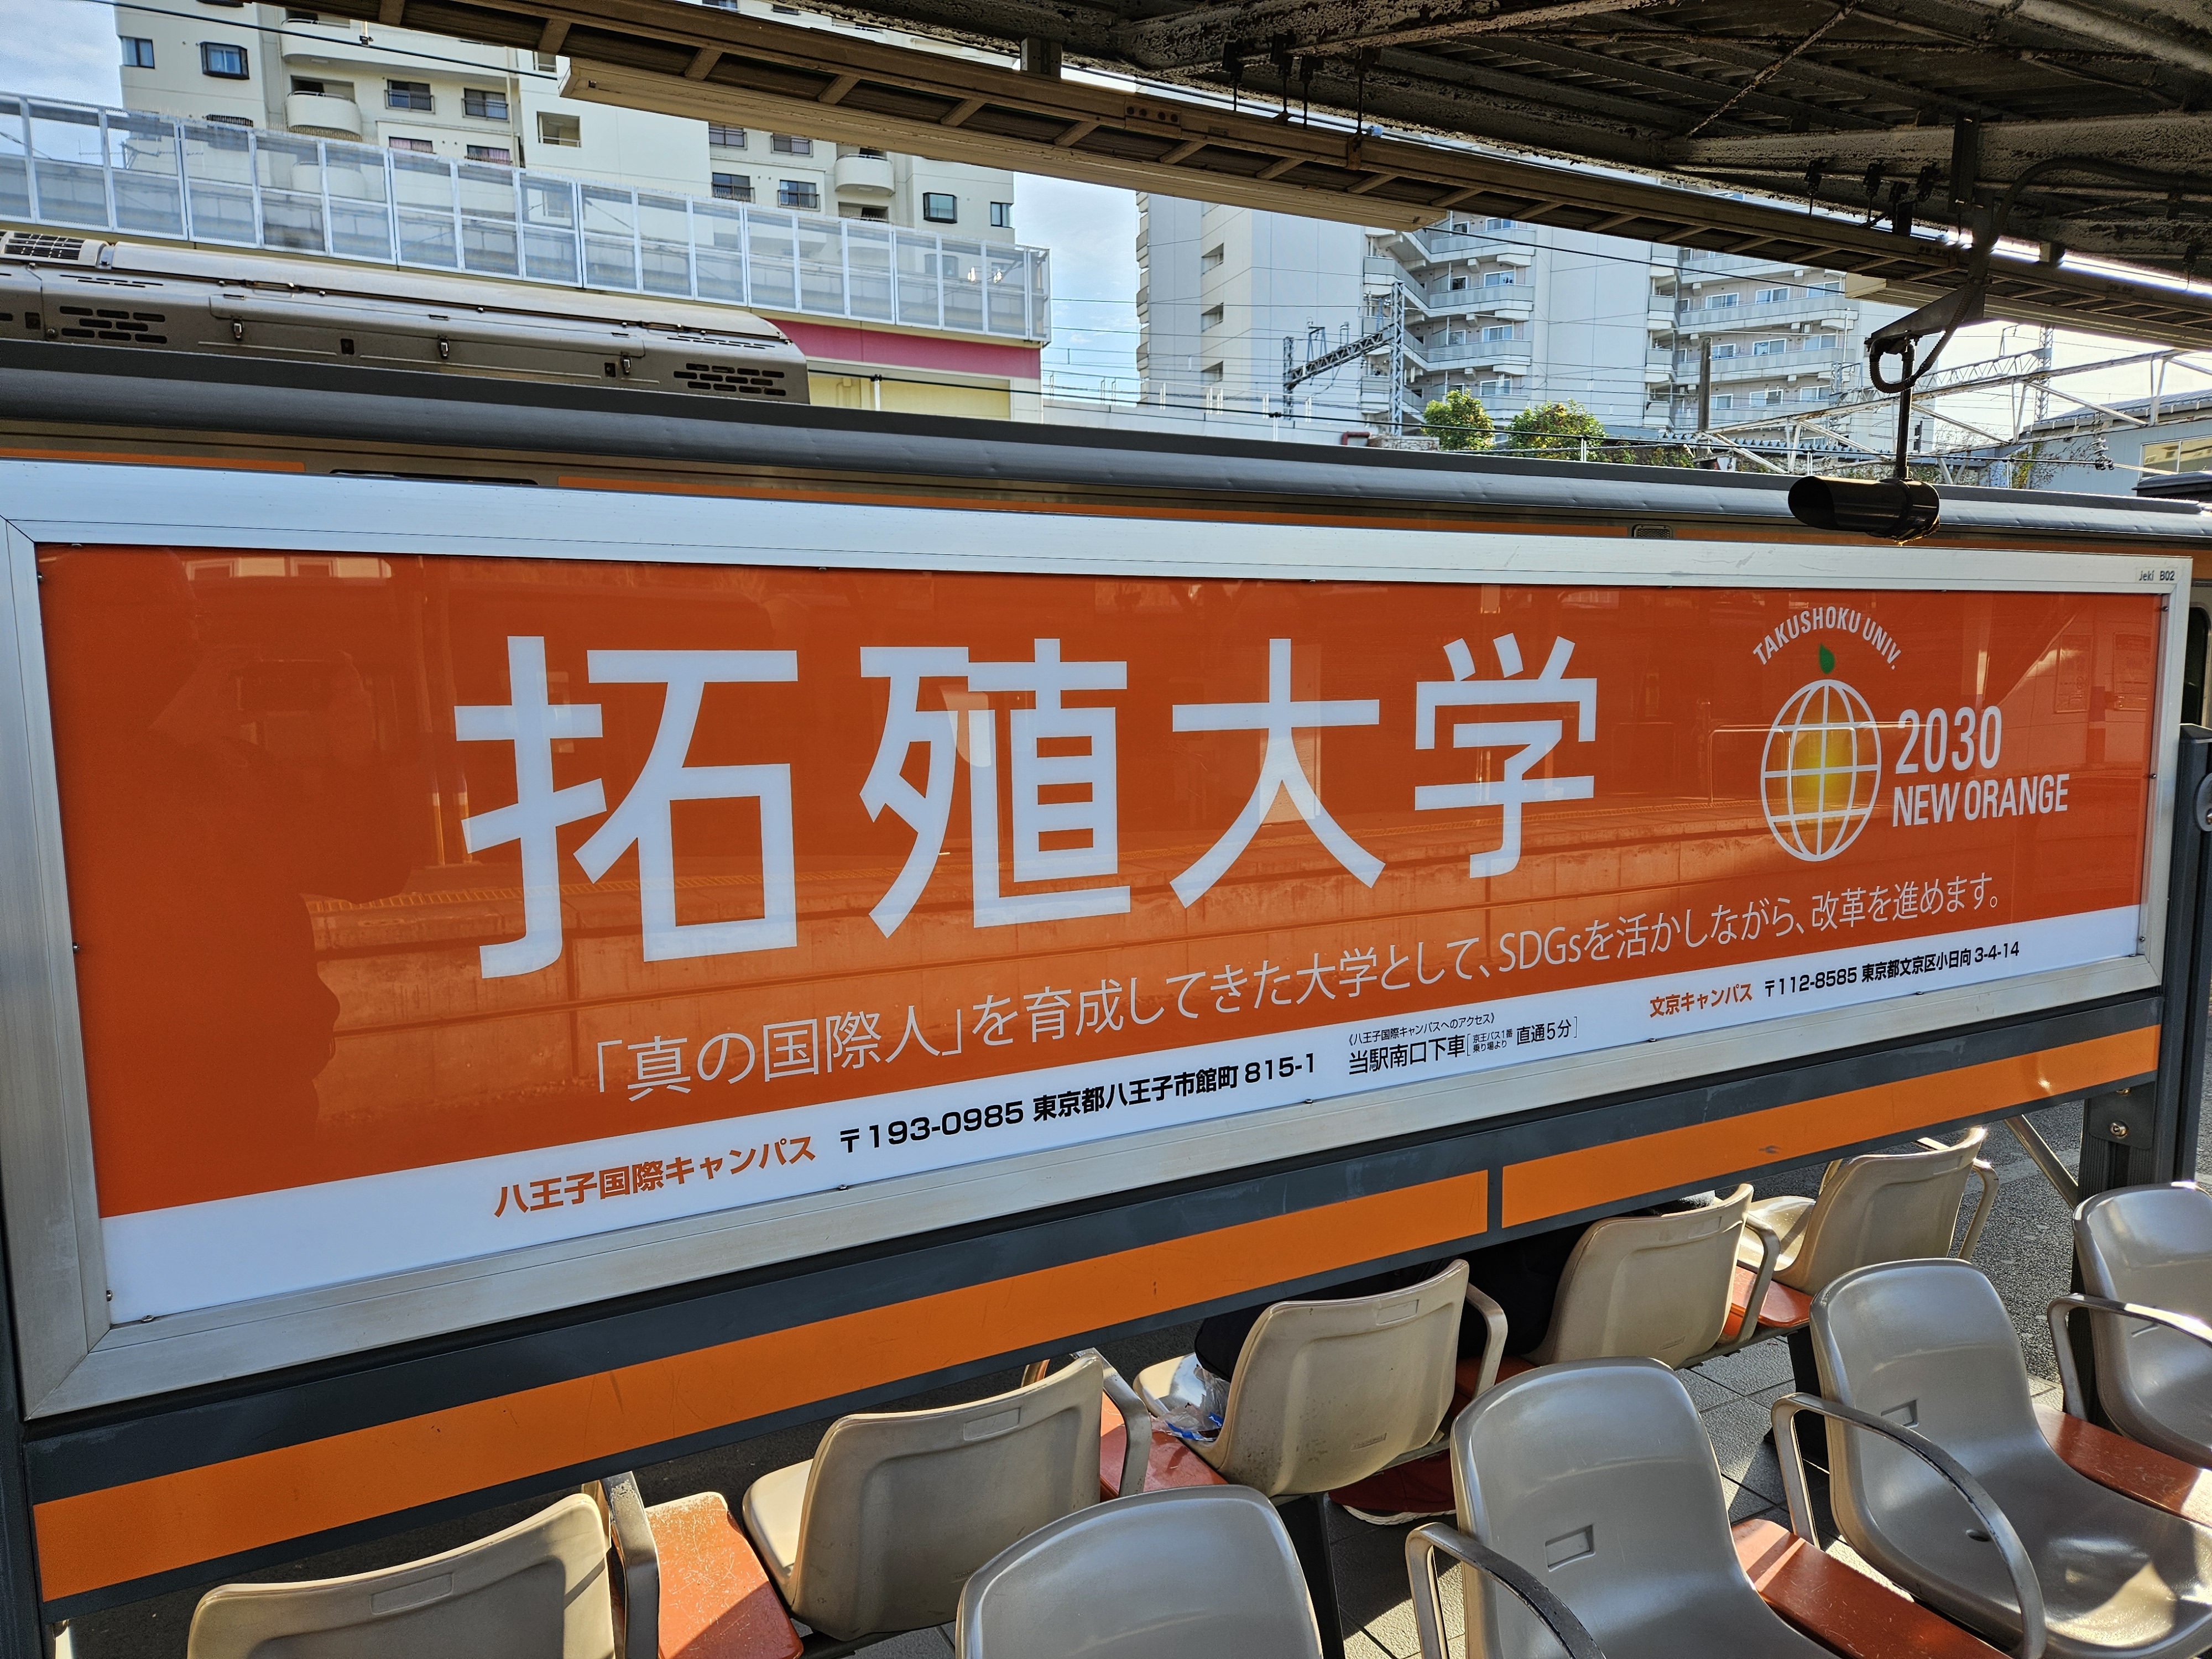 Takushoku Sign at Takao Station